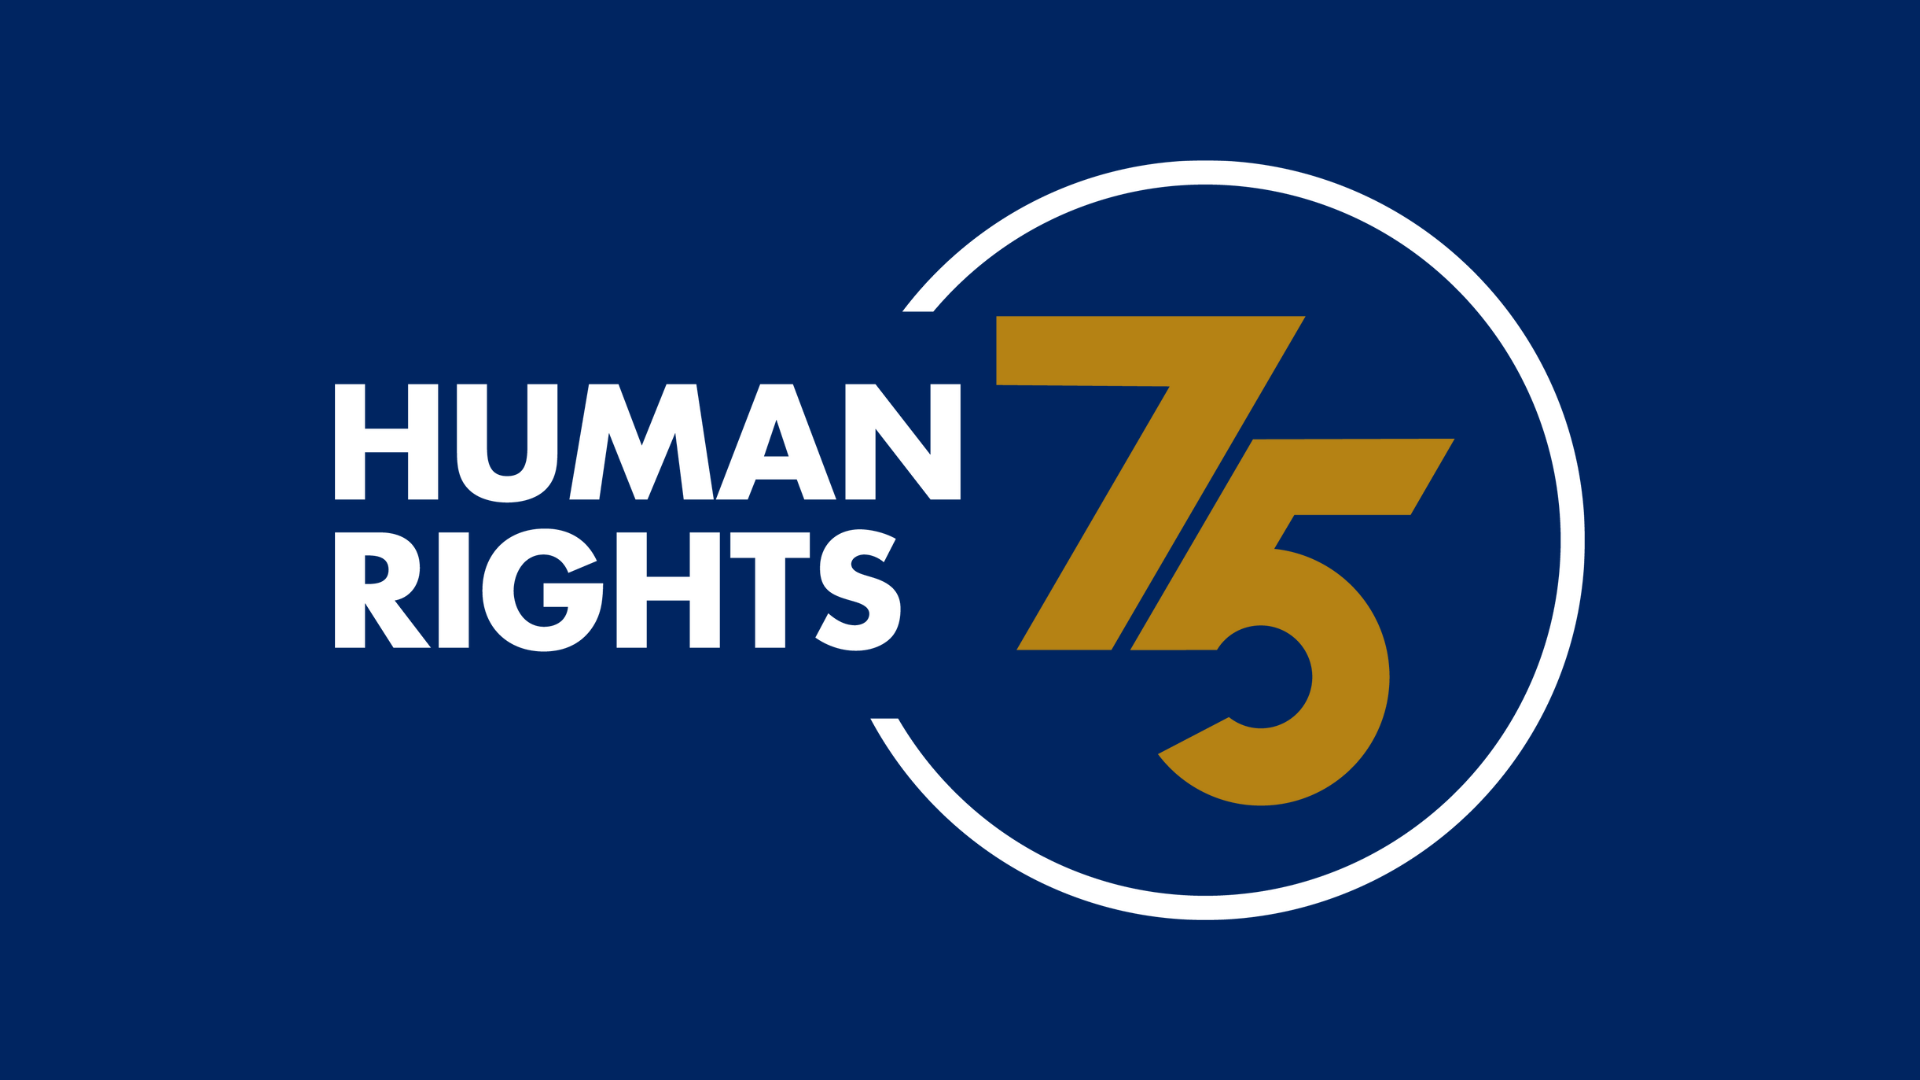 Human Rights 75 -logo